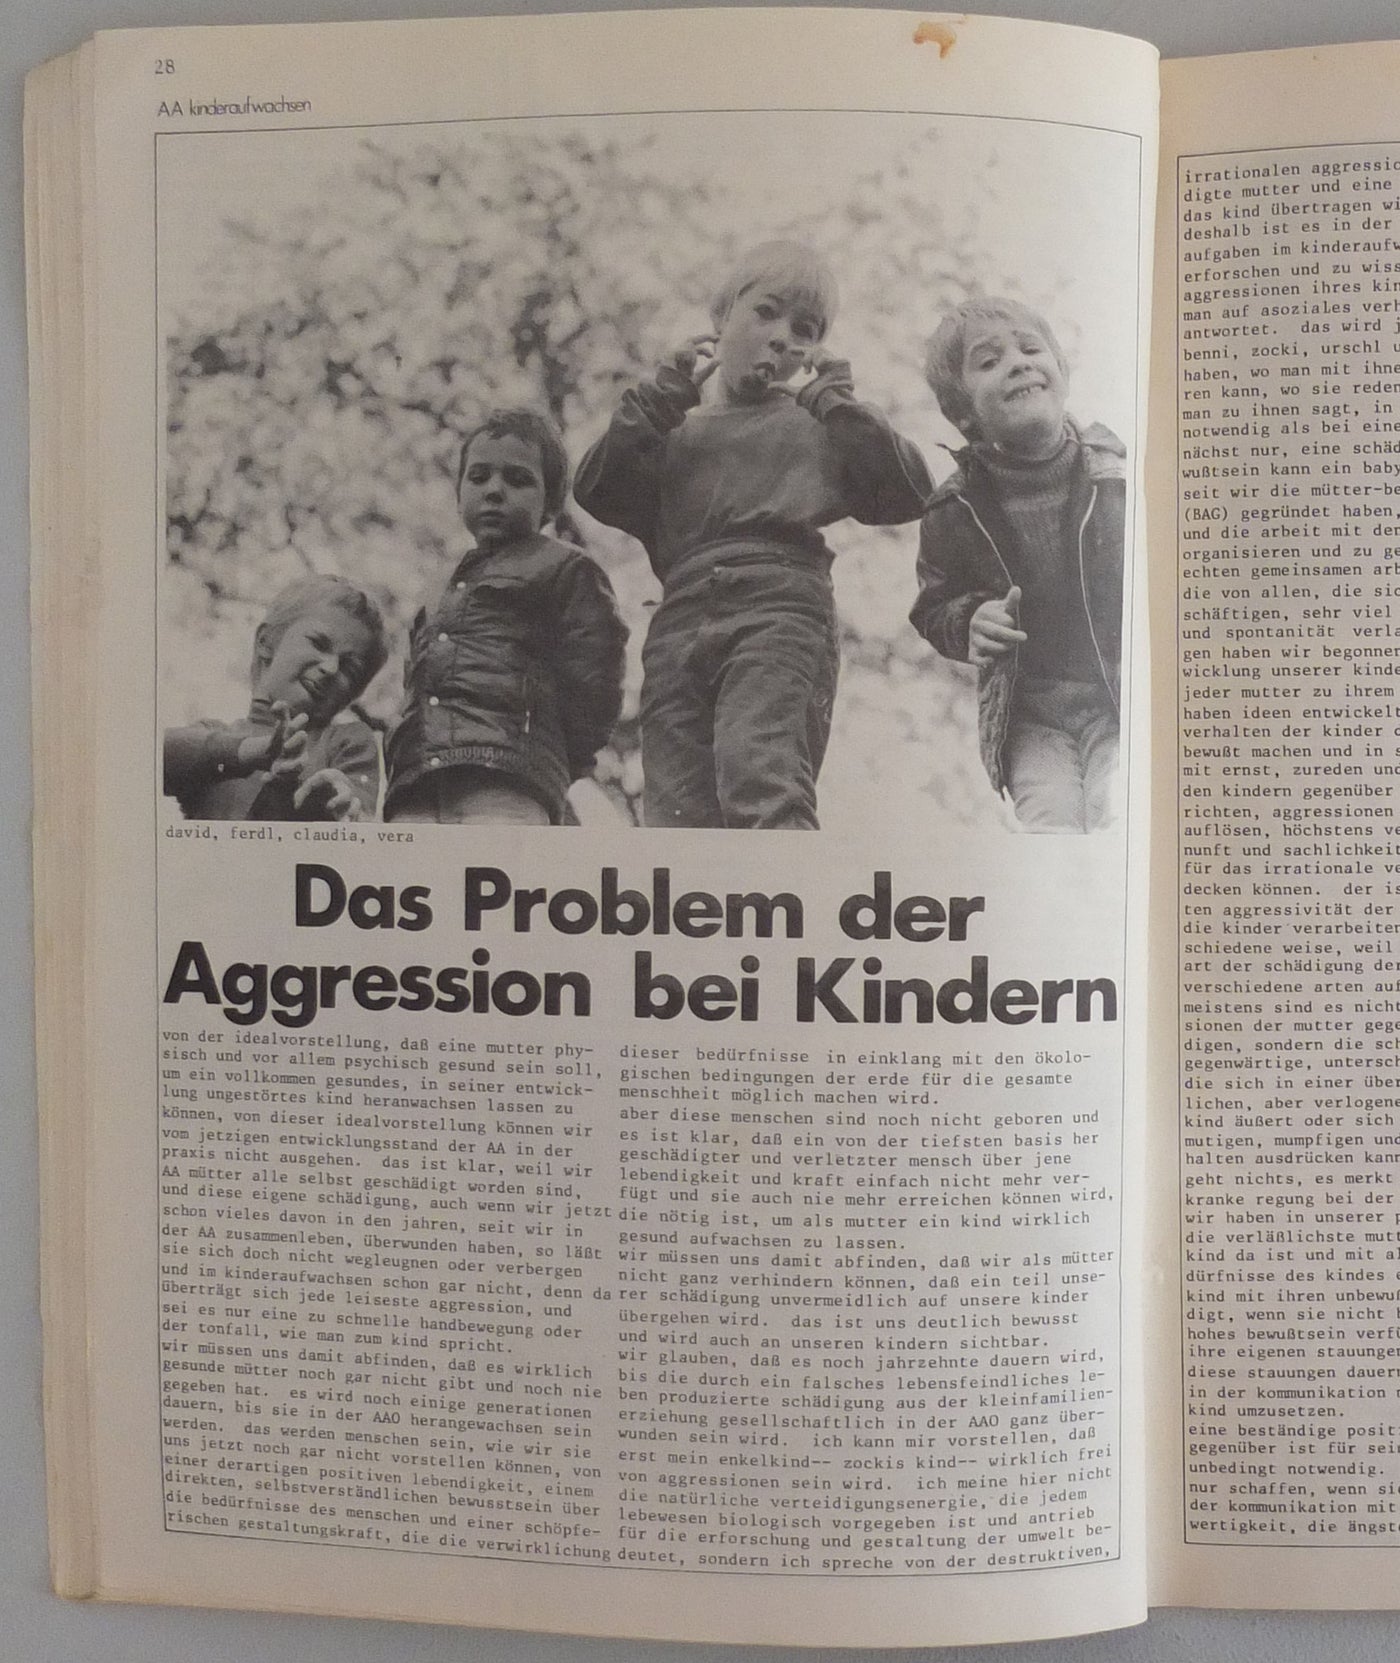 AA Kommune - AA Nachrichten, April 1977}